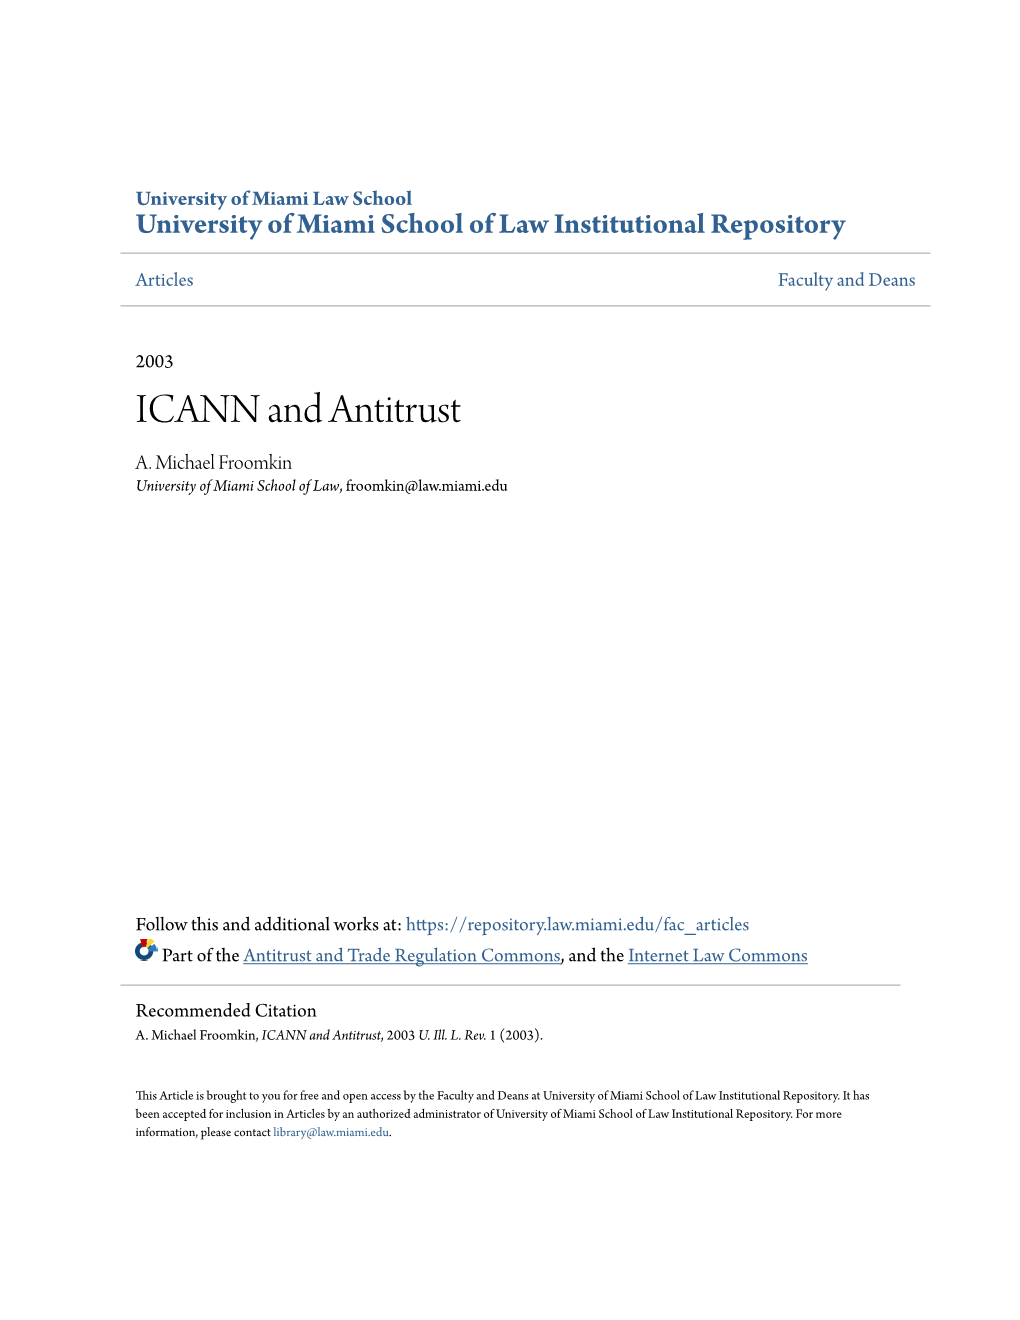 ICANN and Antitrust A